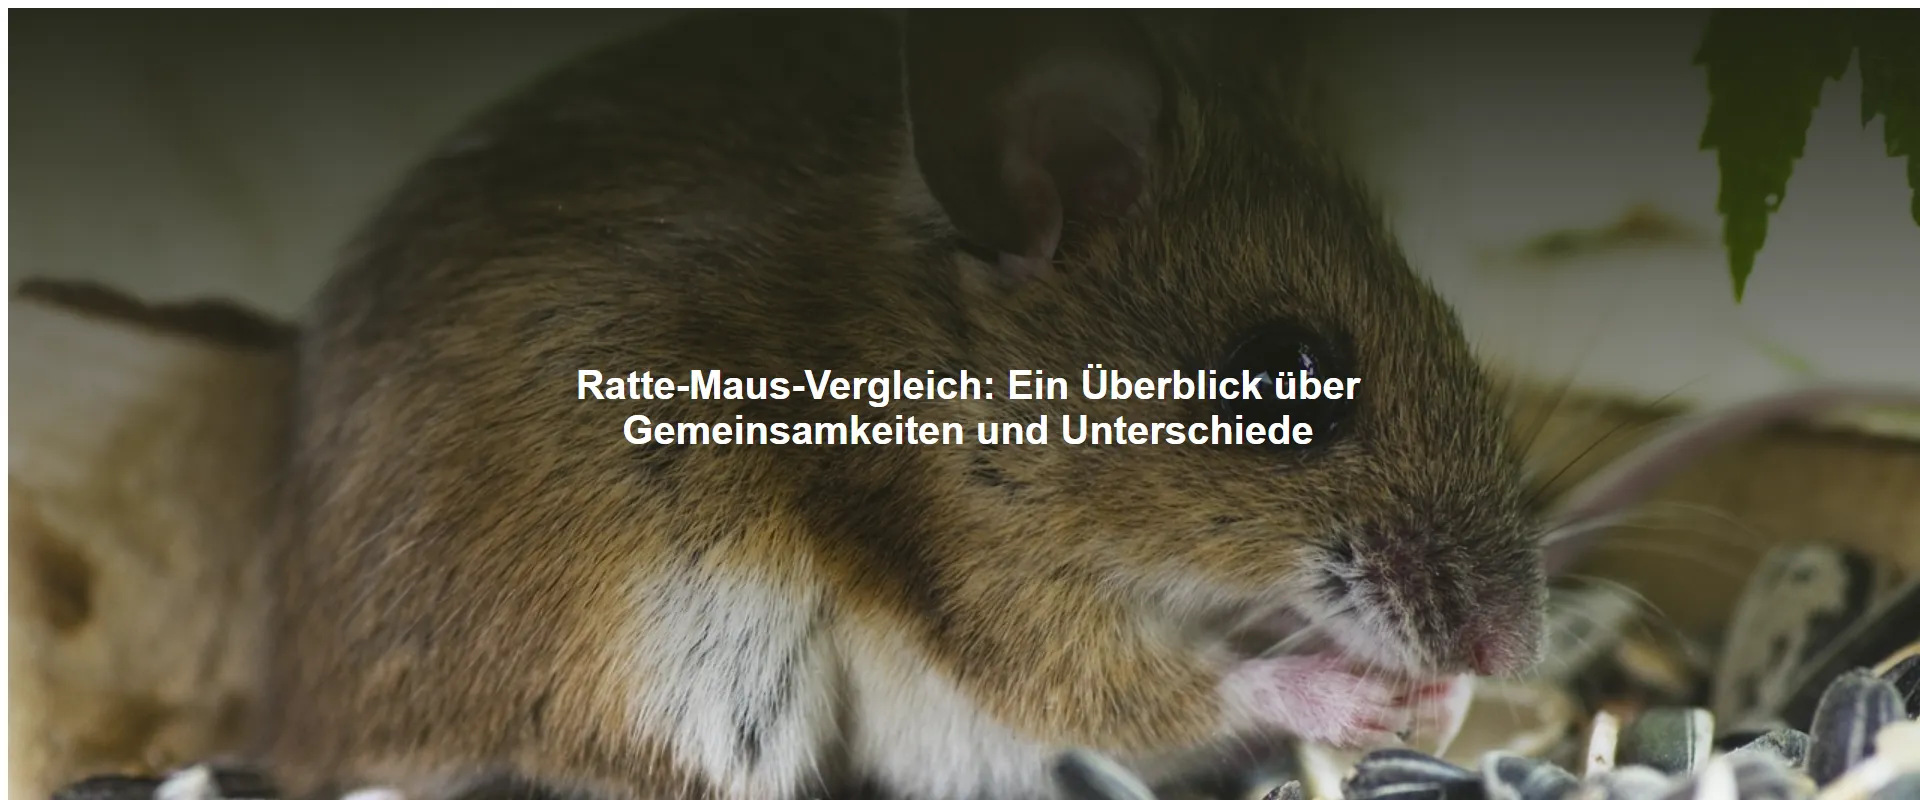 Ratte-Maus-Vergleich – Ein Überblick über Gemeinsamkeiten und Unterschiede